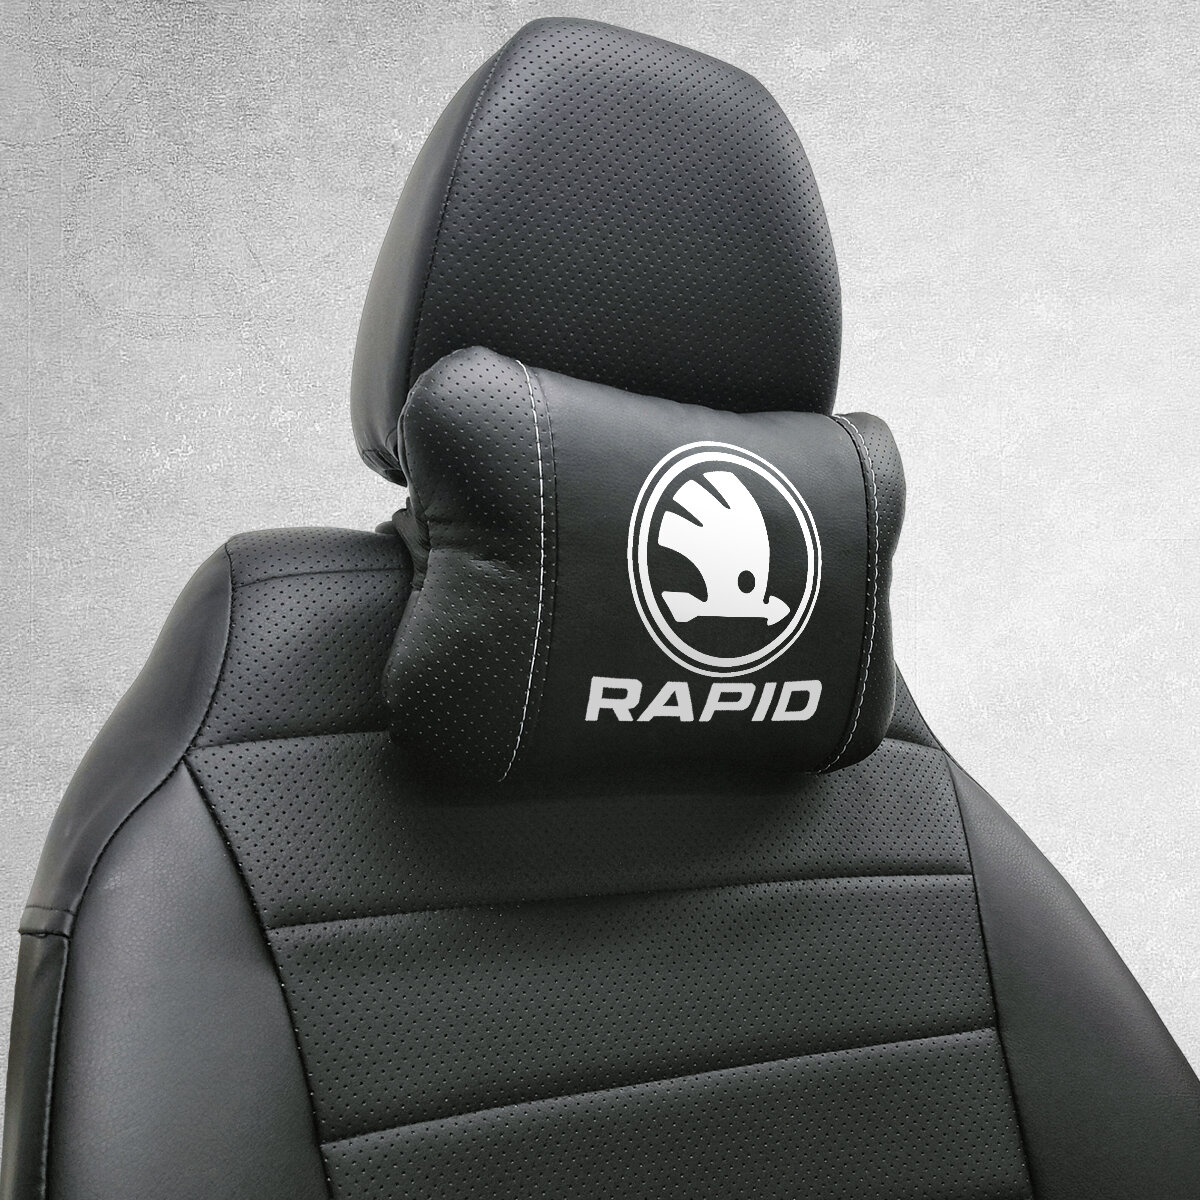 Автомобильная подушка под шею на подголовник эмблема Skoda Rapid, для Шкода Рапид. Подушка для шеи в машину. Подушка на сиденье автомобиля.